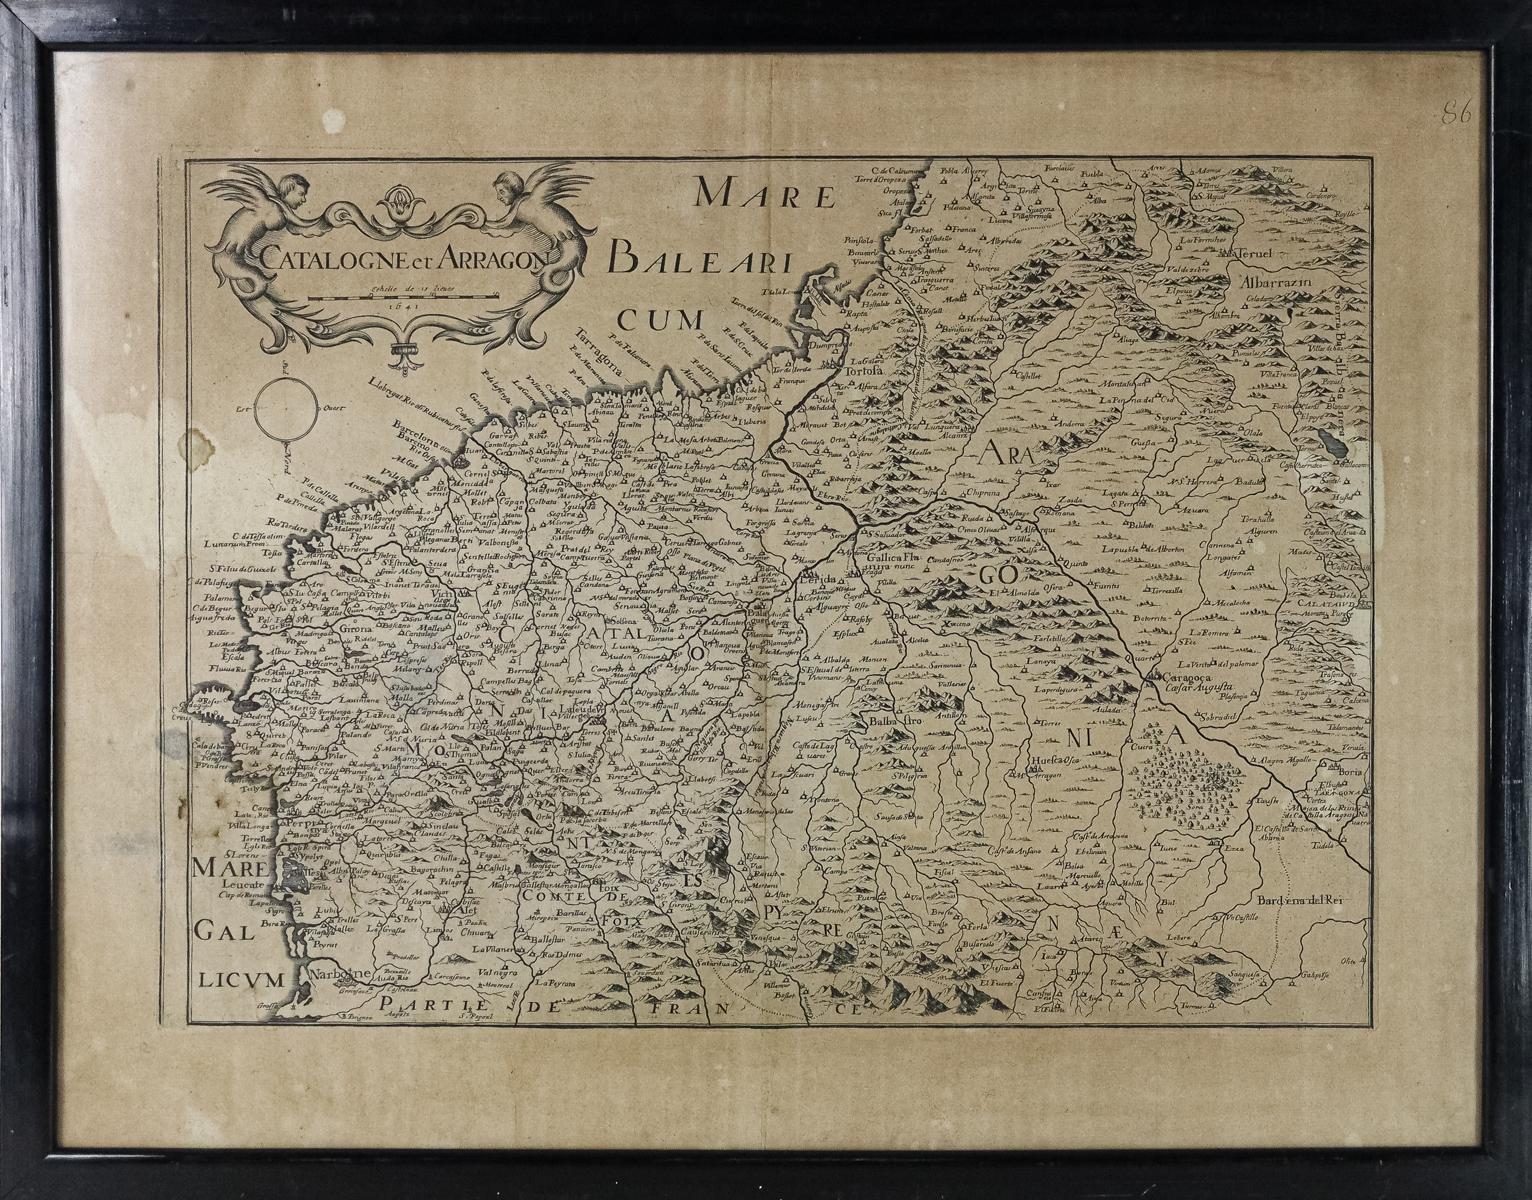 MAPA FRANCÉS DE CATALUÑA Y ARAGÓN DE 1641